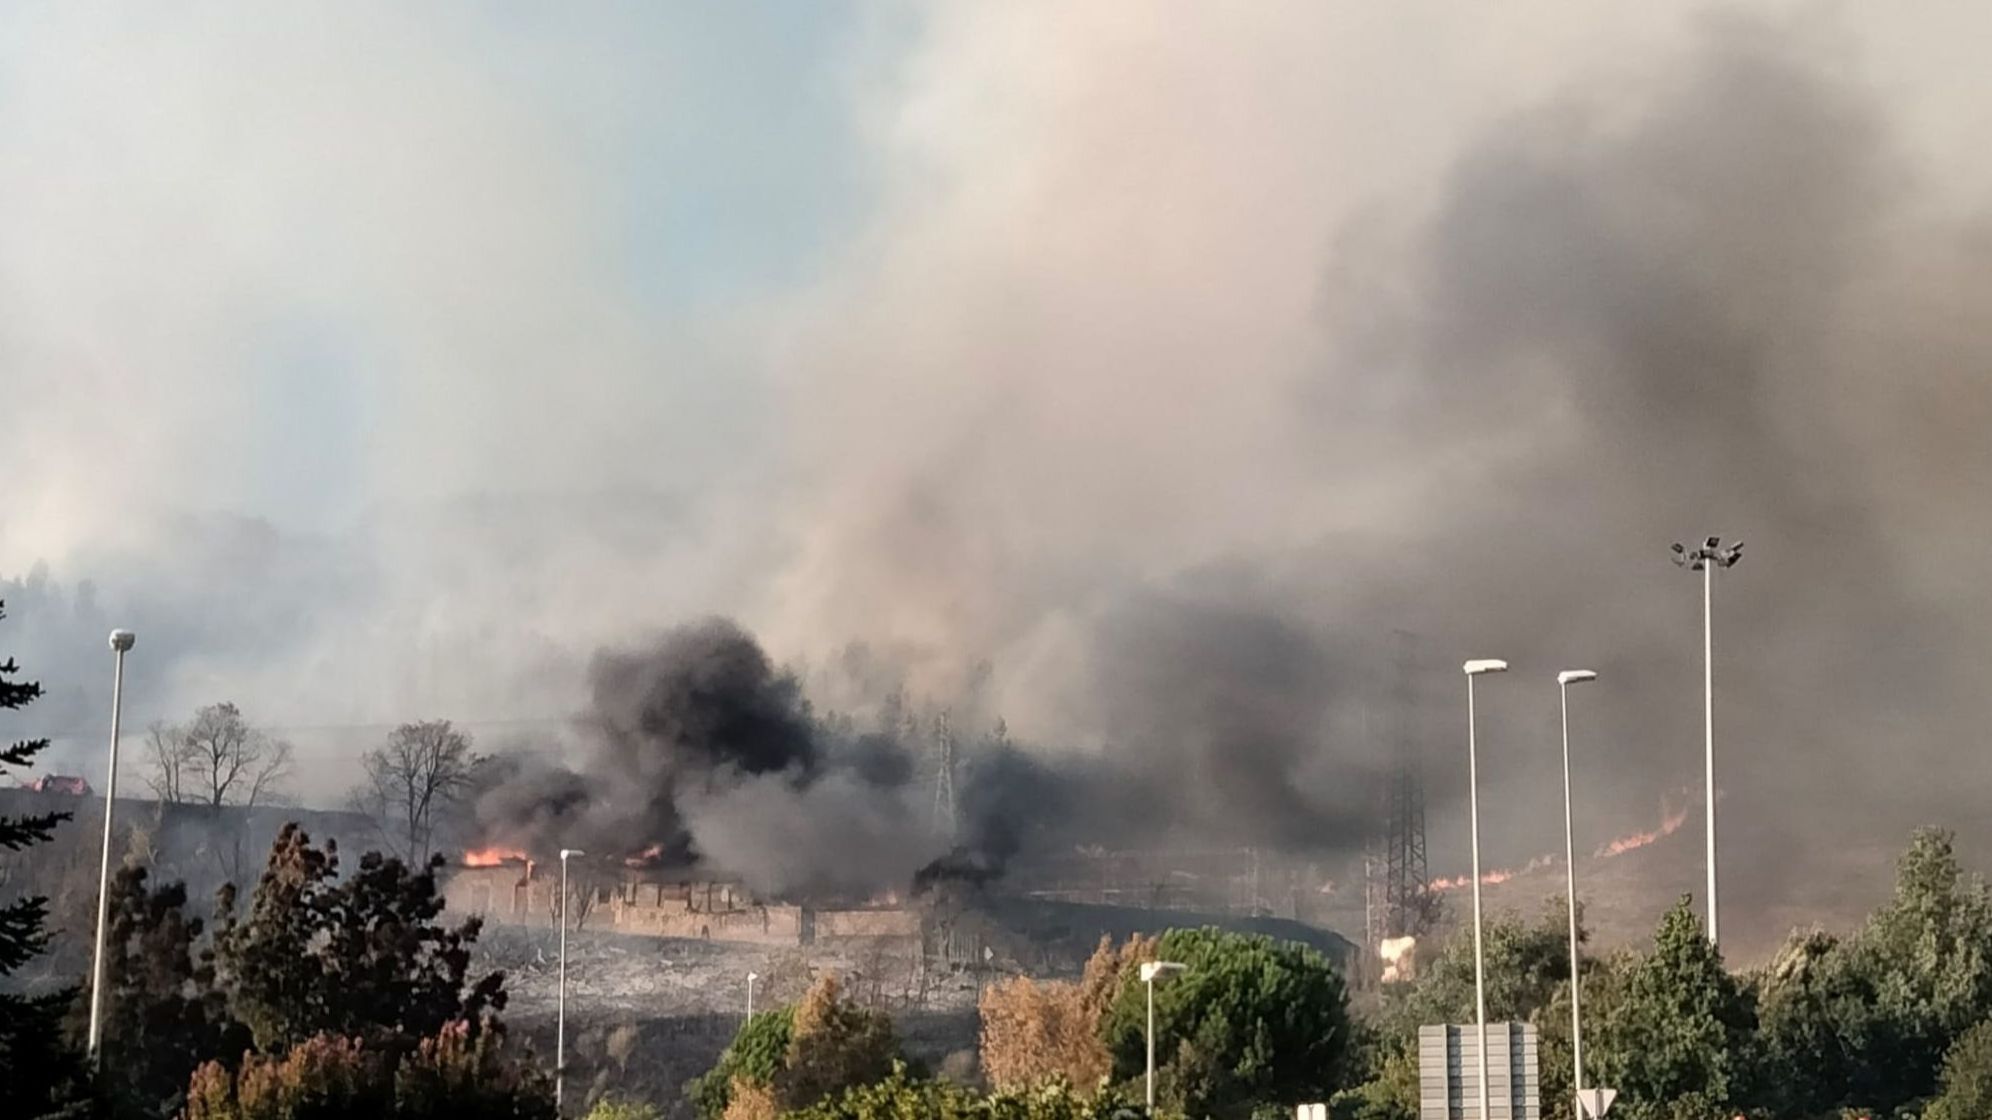 Movilizados cuatro aviones y seis helicópteros del Gobierno de España y de Navarra para extinguir el incendio en Ezkaba